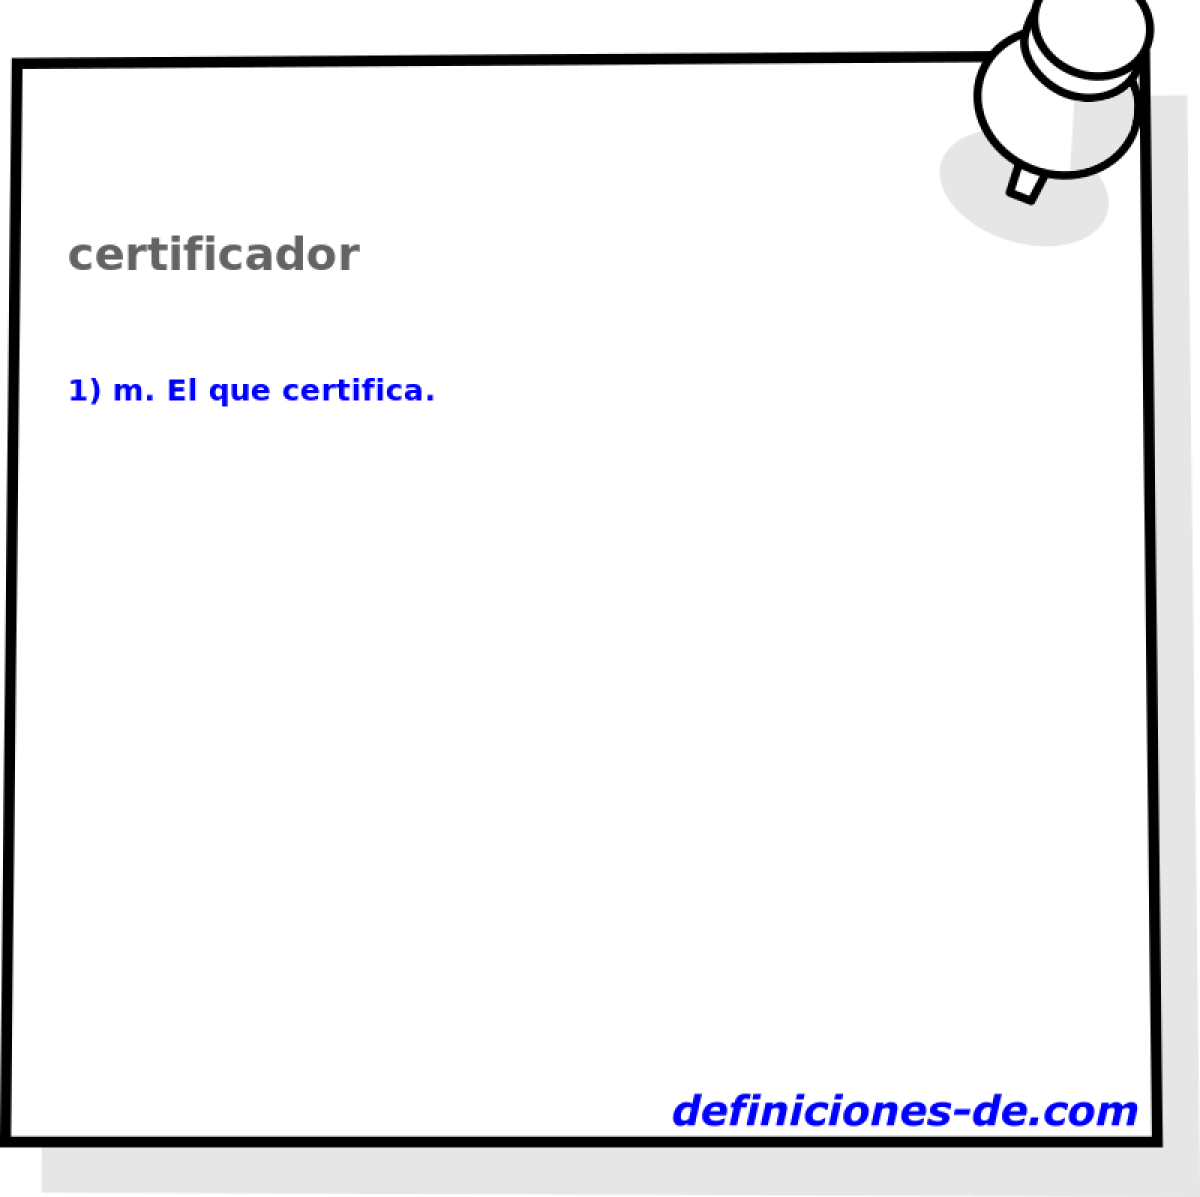 certificador 